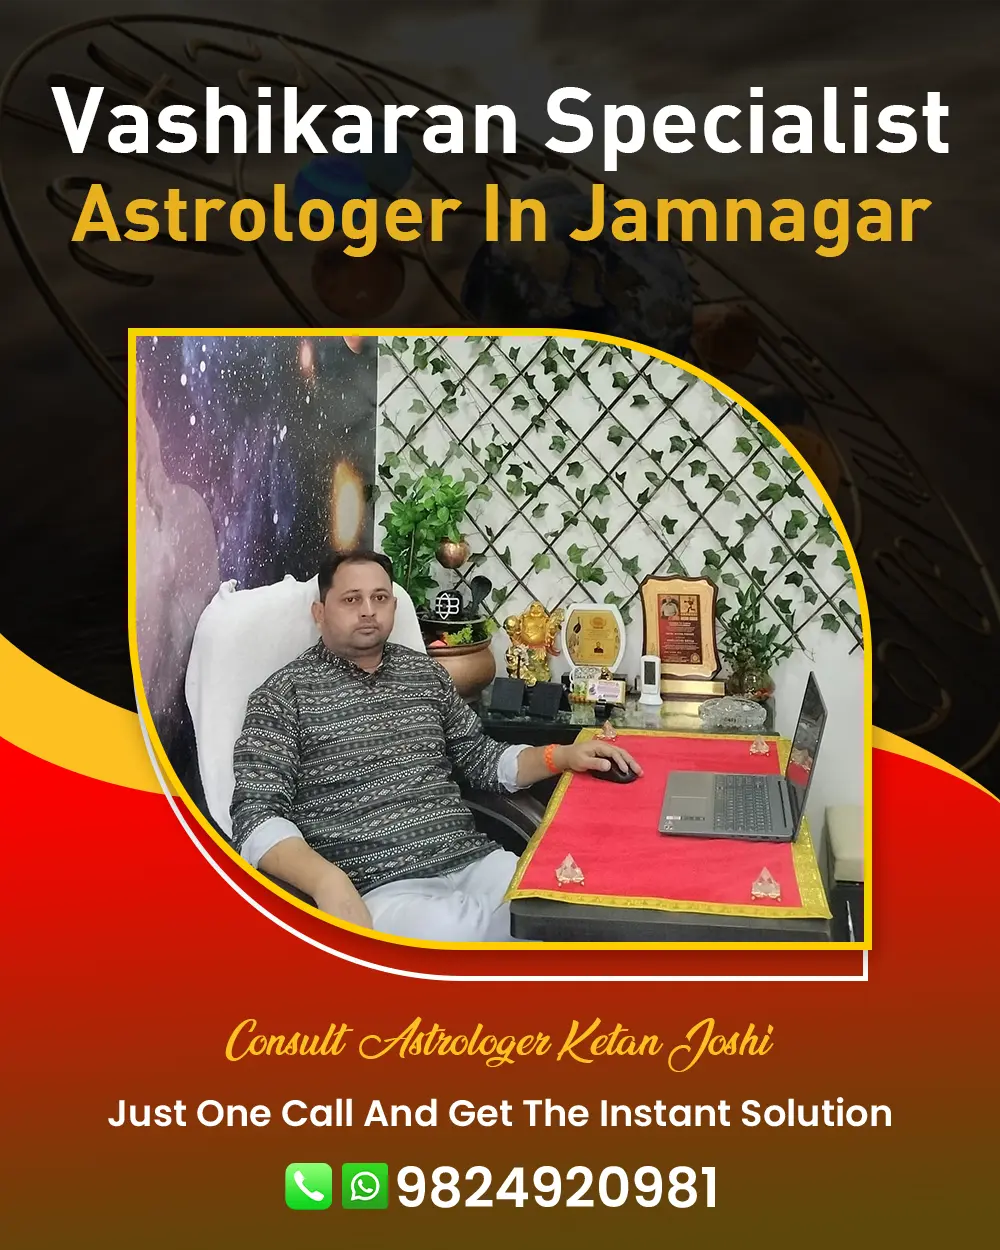 Vashikaran Specialist Astrologer In Jamnagar